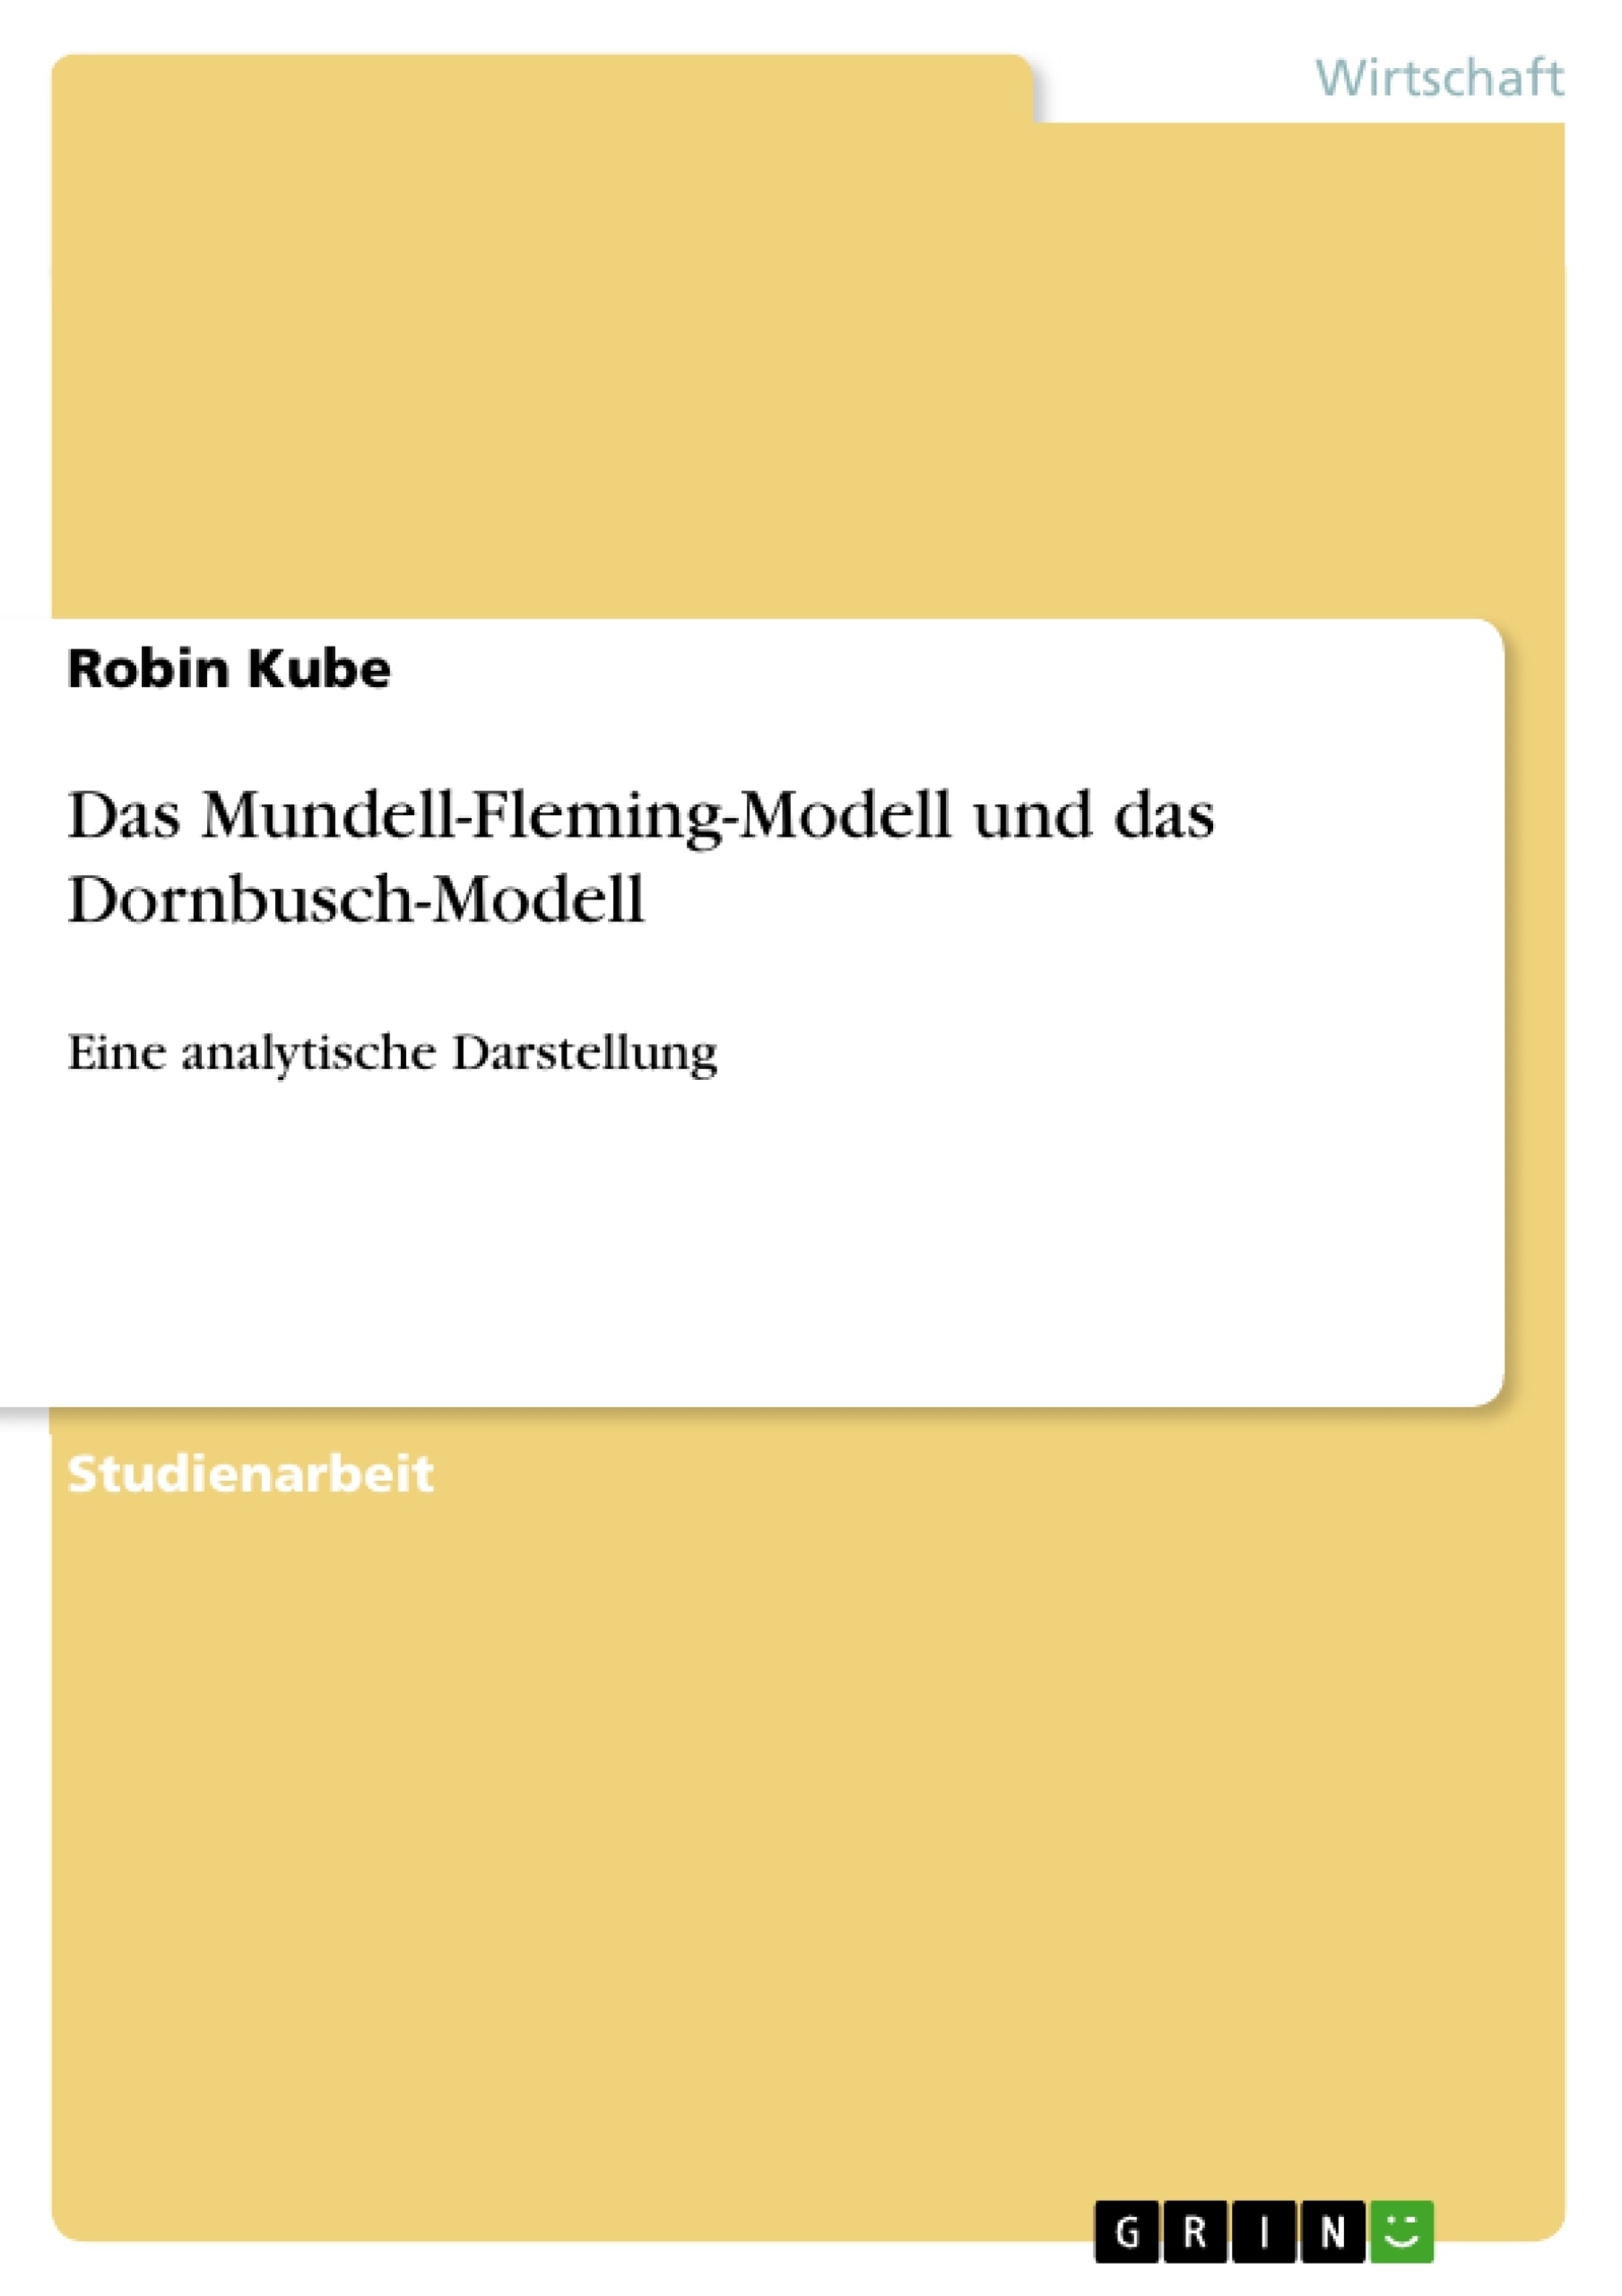 Título: Das Mundell-Fleming-Modell und das Dornbusch-Modell